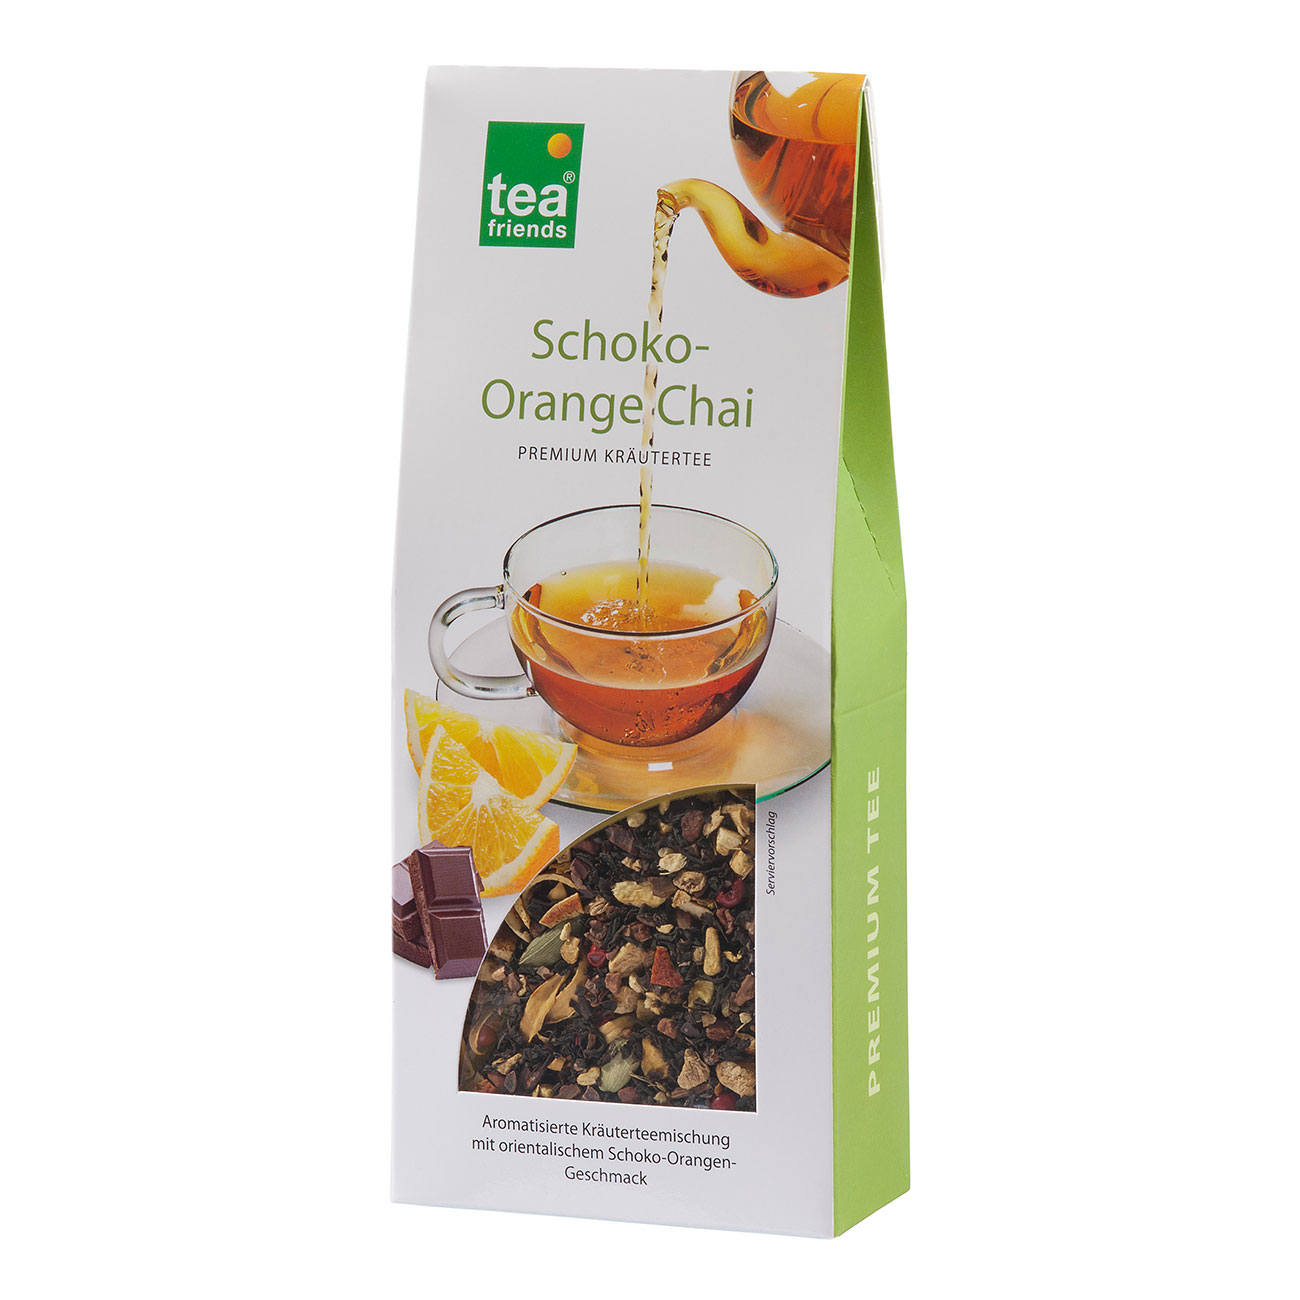 90g Schoko-Orange Chai loser aromatisierter Kräutertee